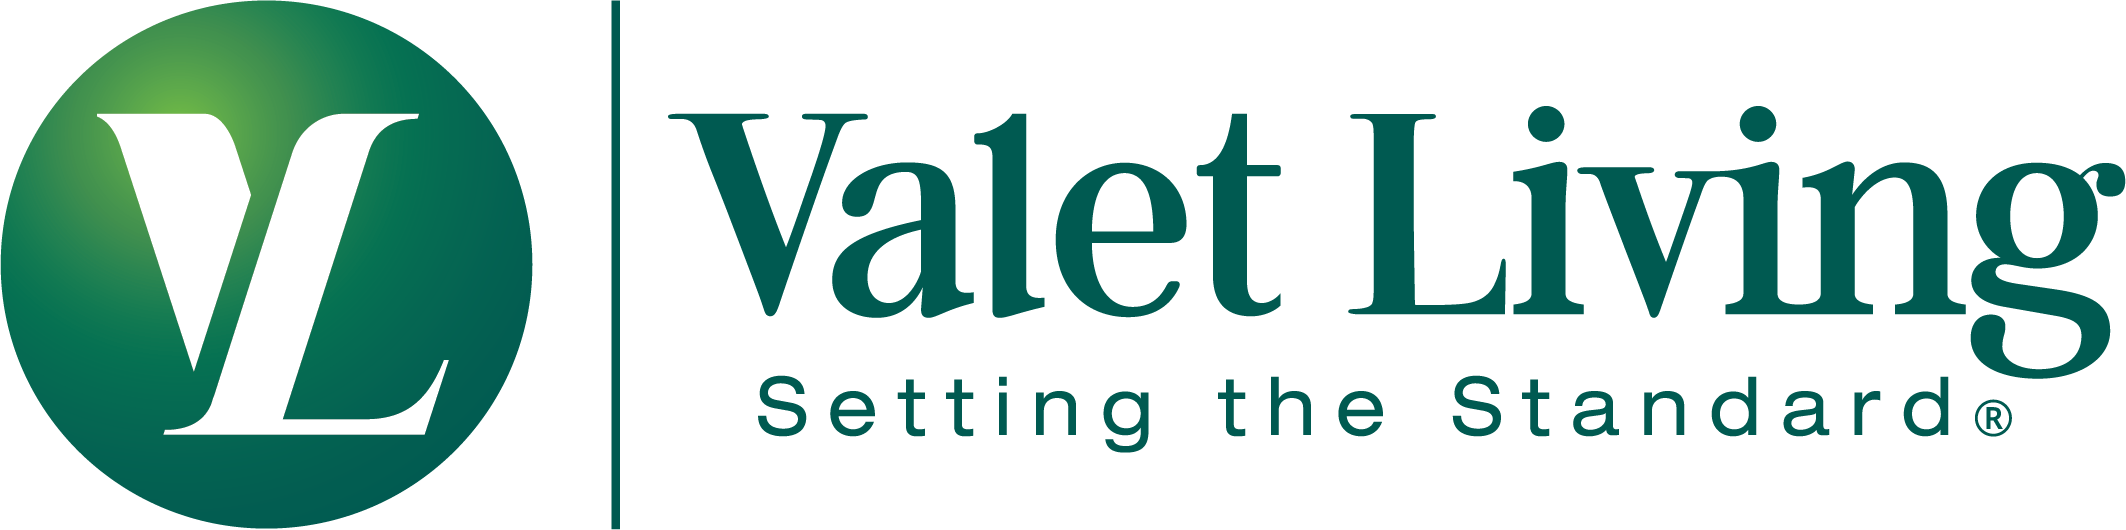 Valet Living Company Logo